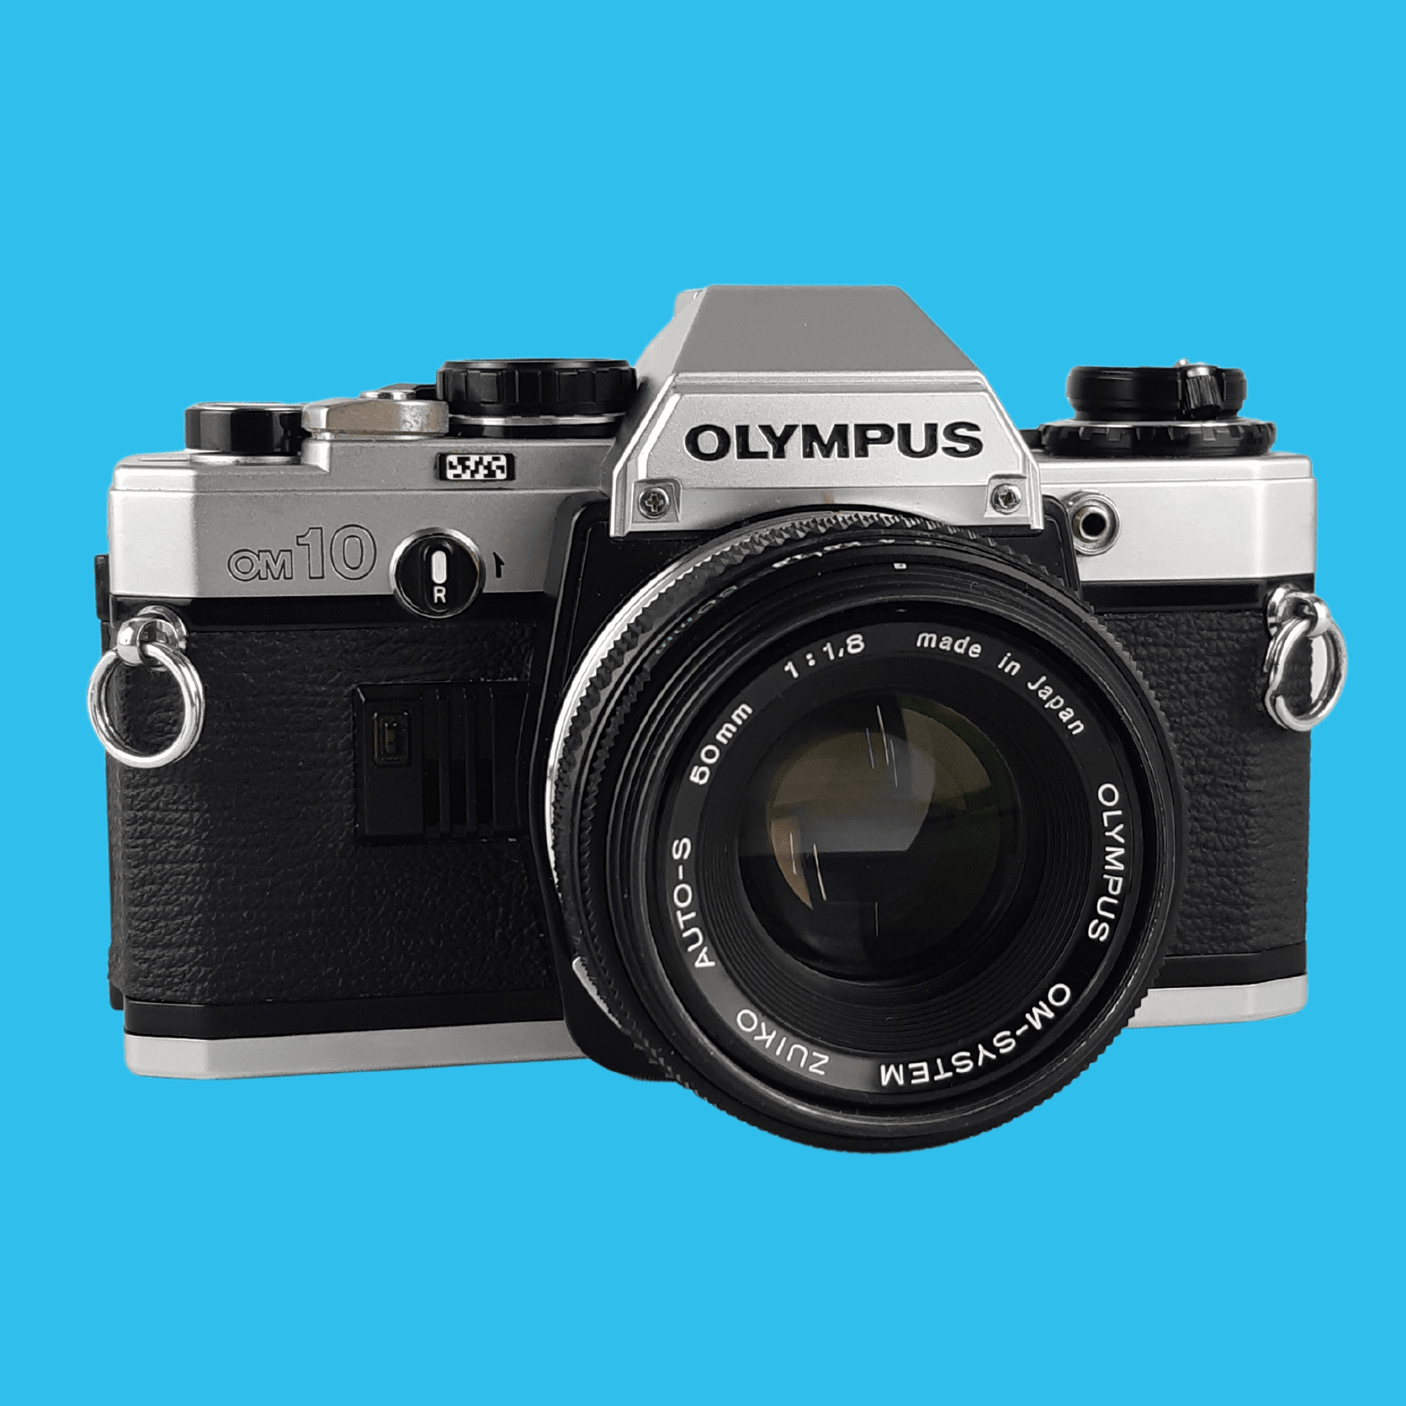 Olympus OM10 Vintage SLR 35mm Film Camera with f/1.8 50mm Prime Lens